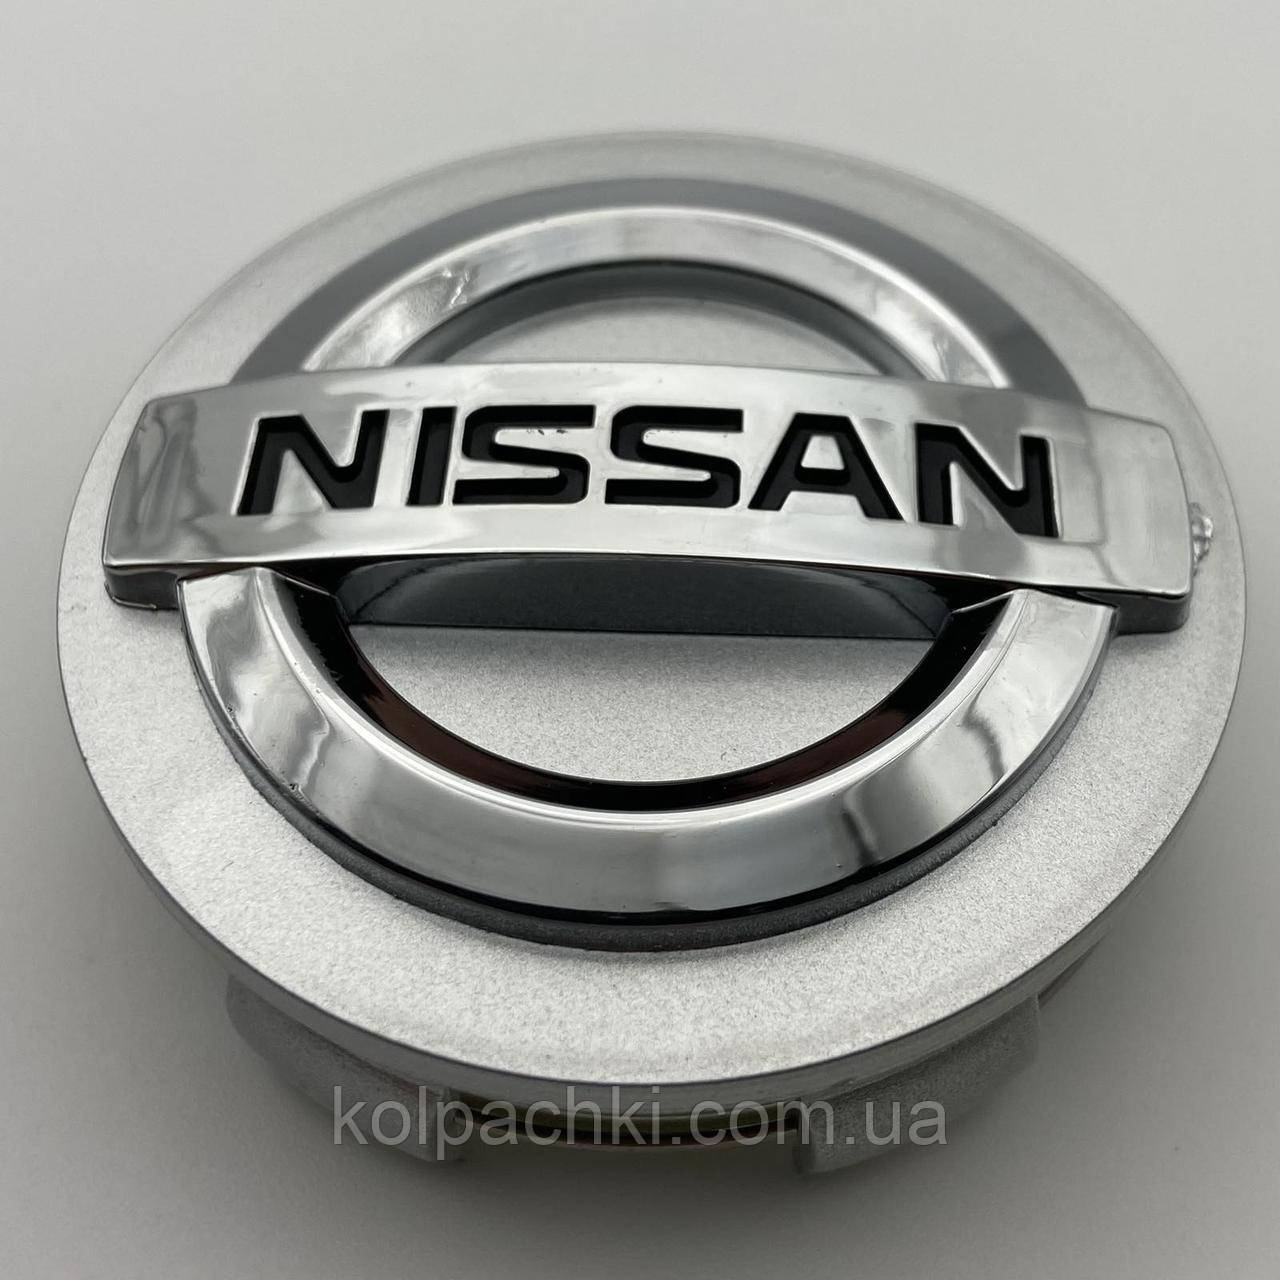 Ковпачок на диски Nissan 60 мм 56 мм сірі